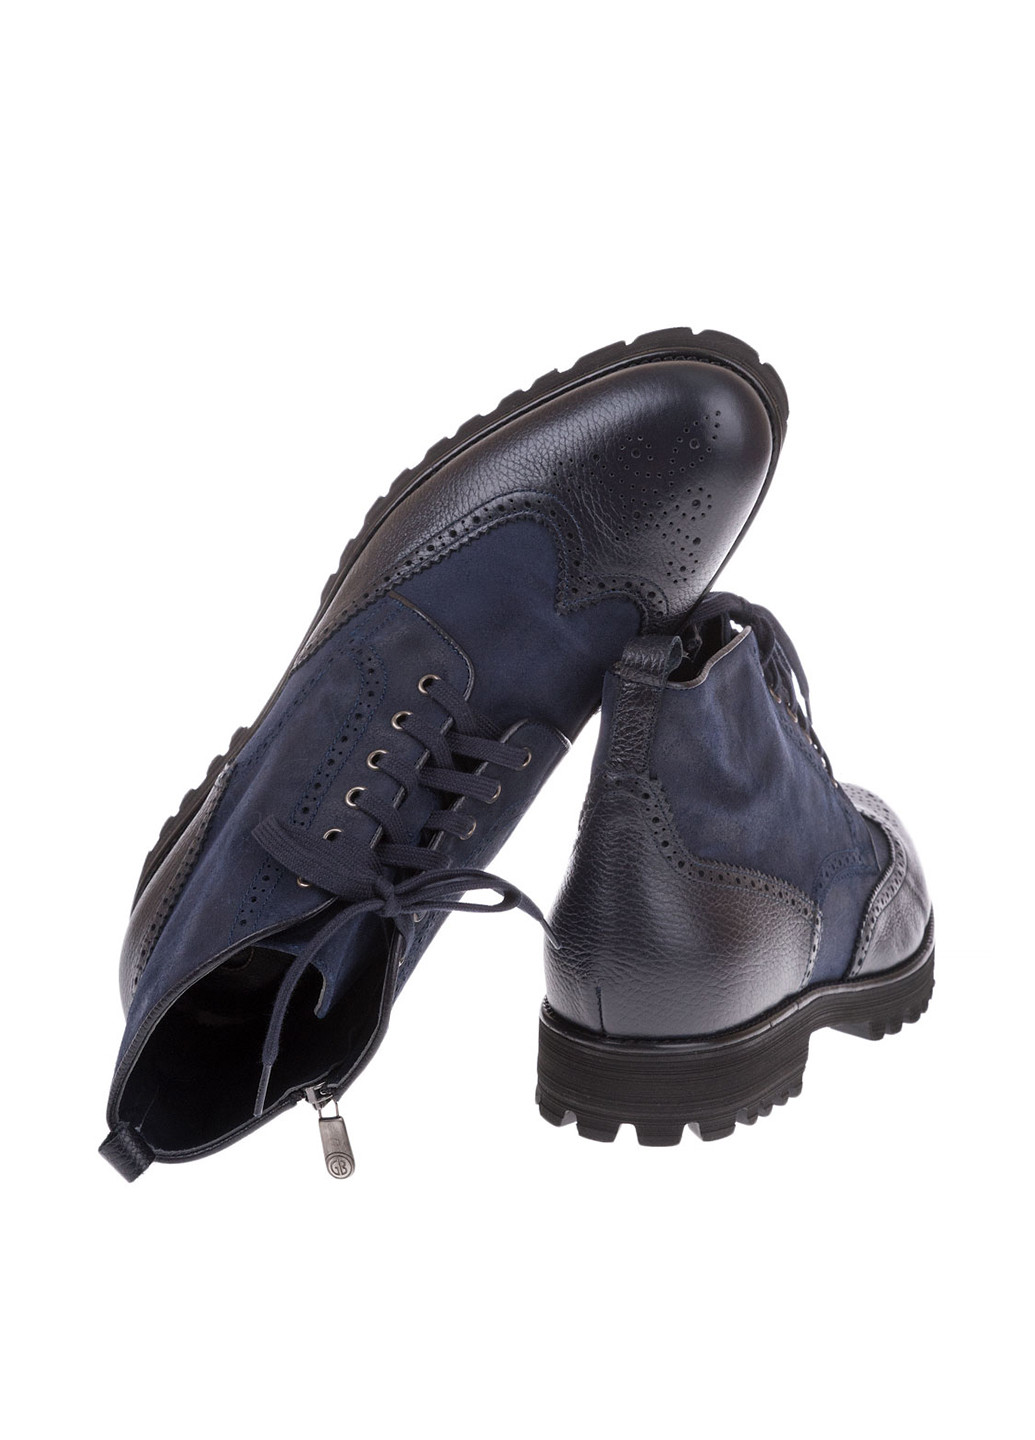 Темно-синие осенние ботинки броги GF.BUTERI